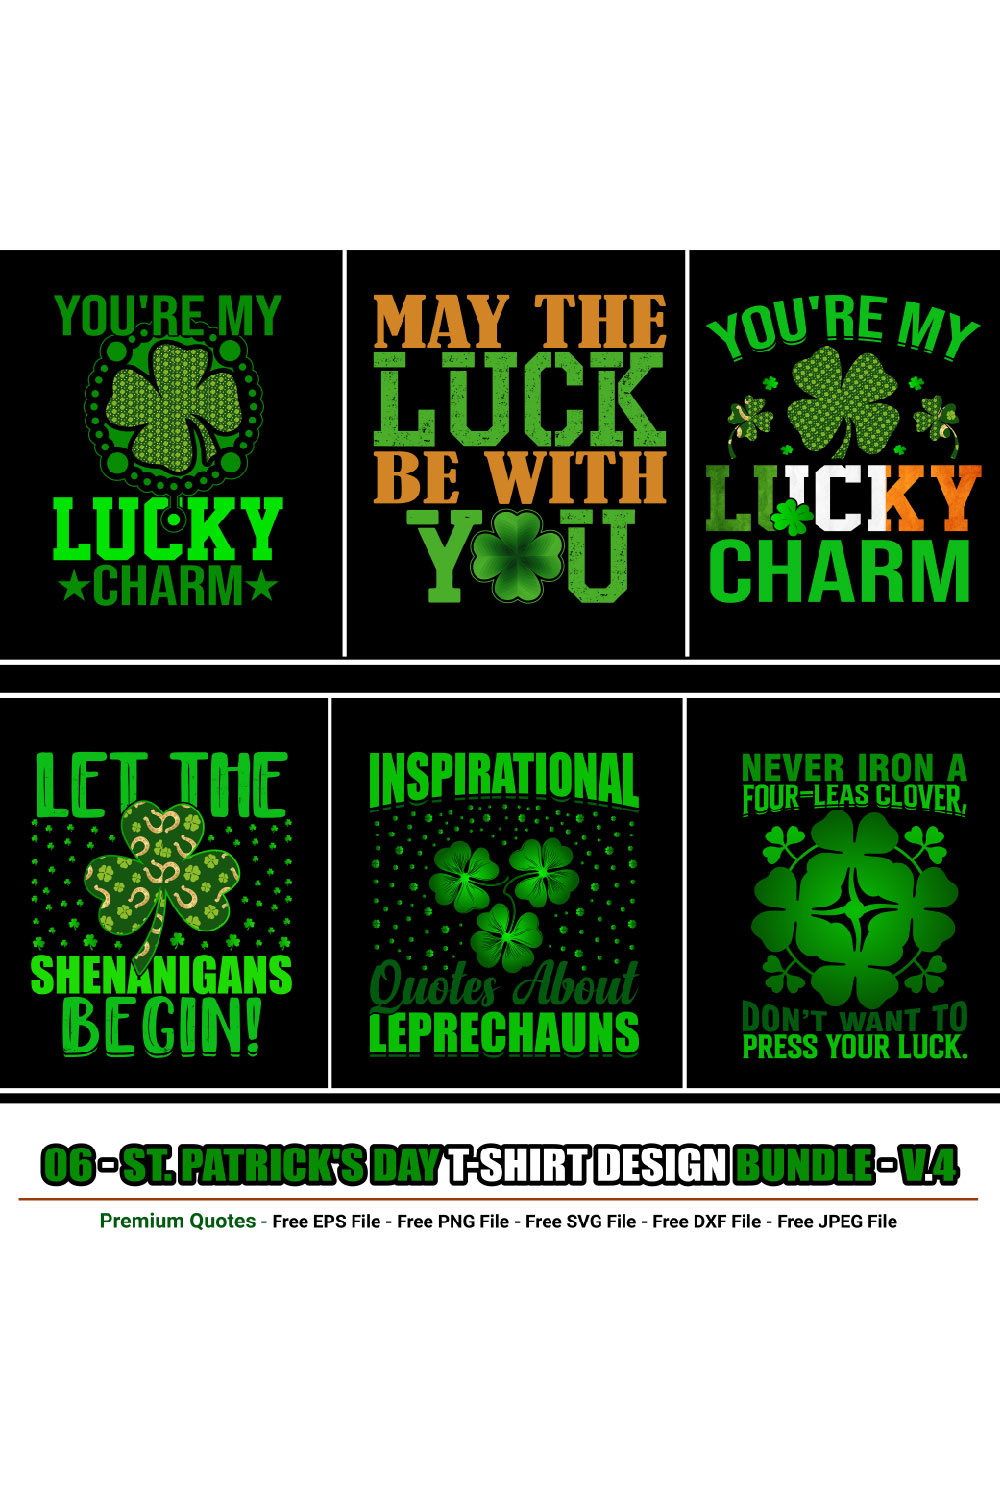 St Patrick’s Day T-shirt Design Bundle pinterest preview image.